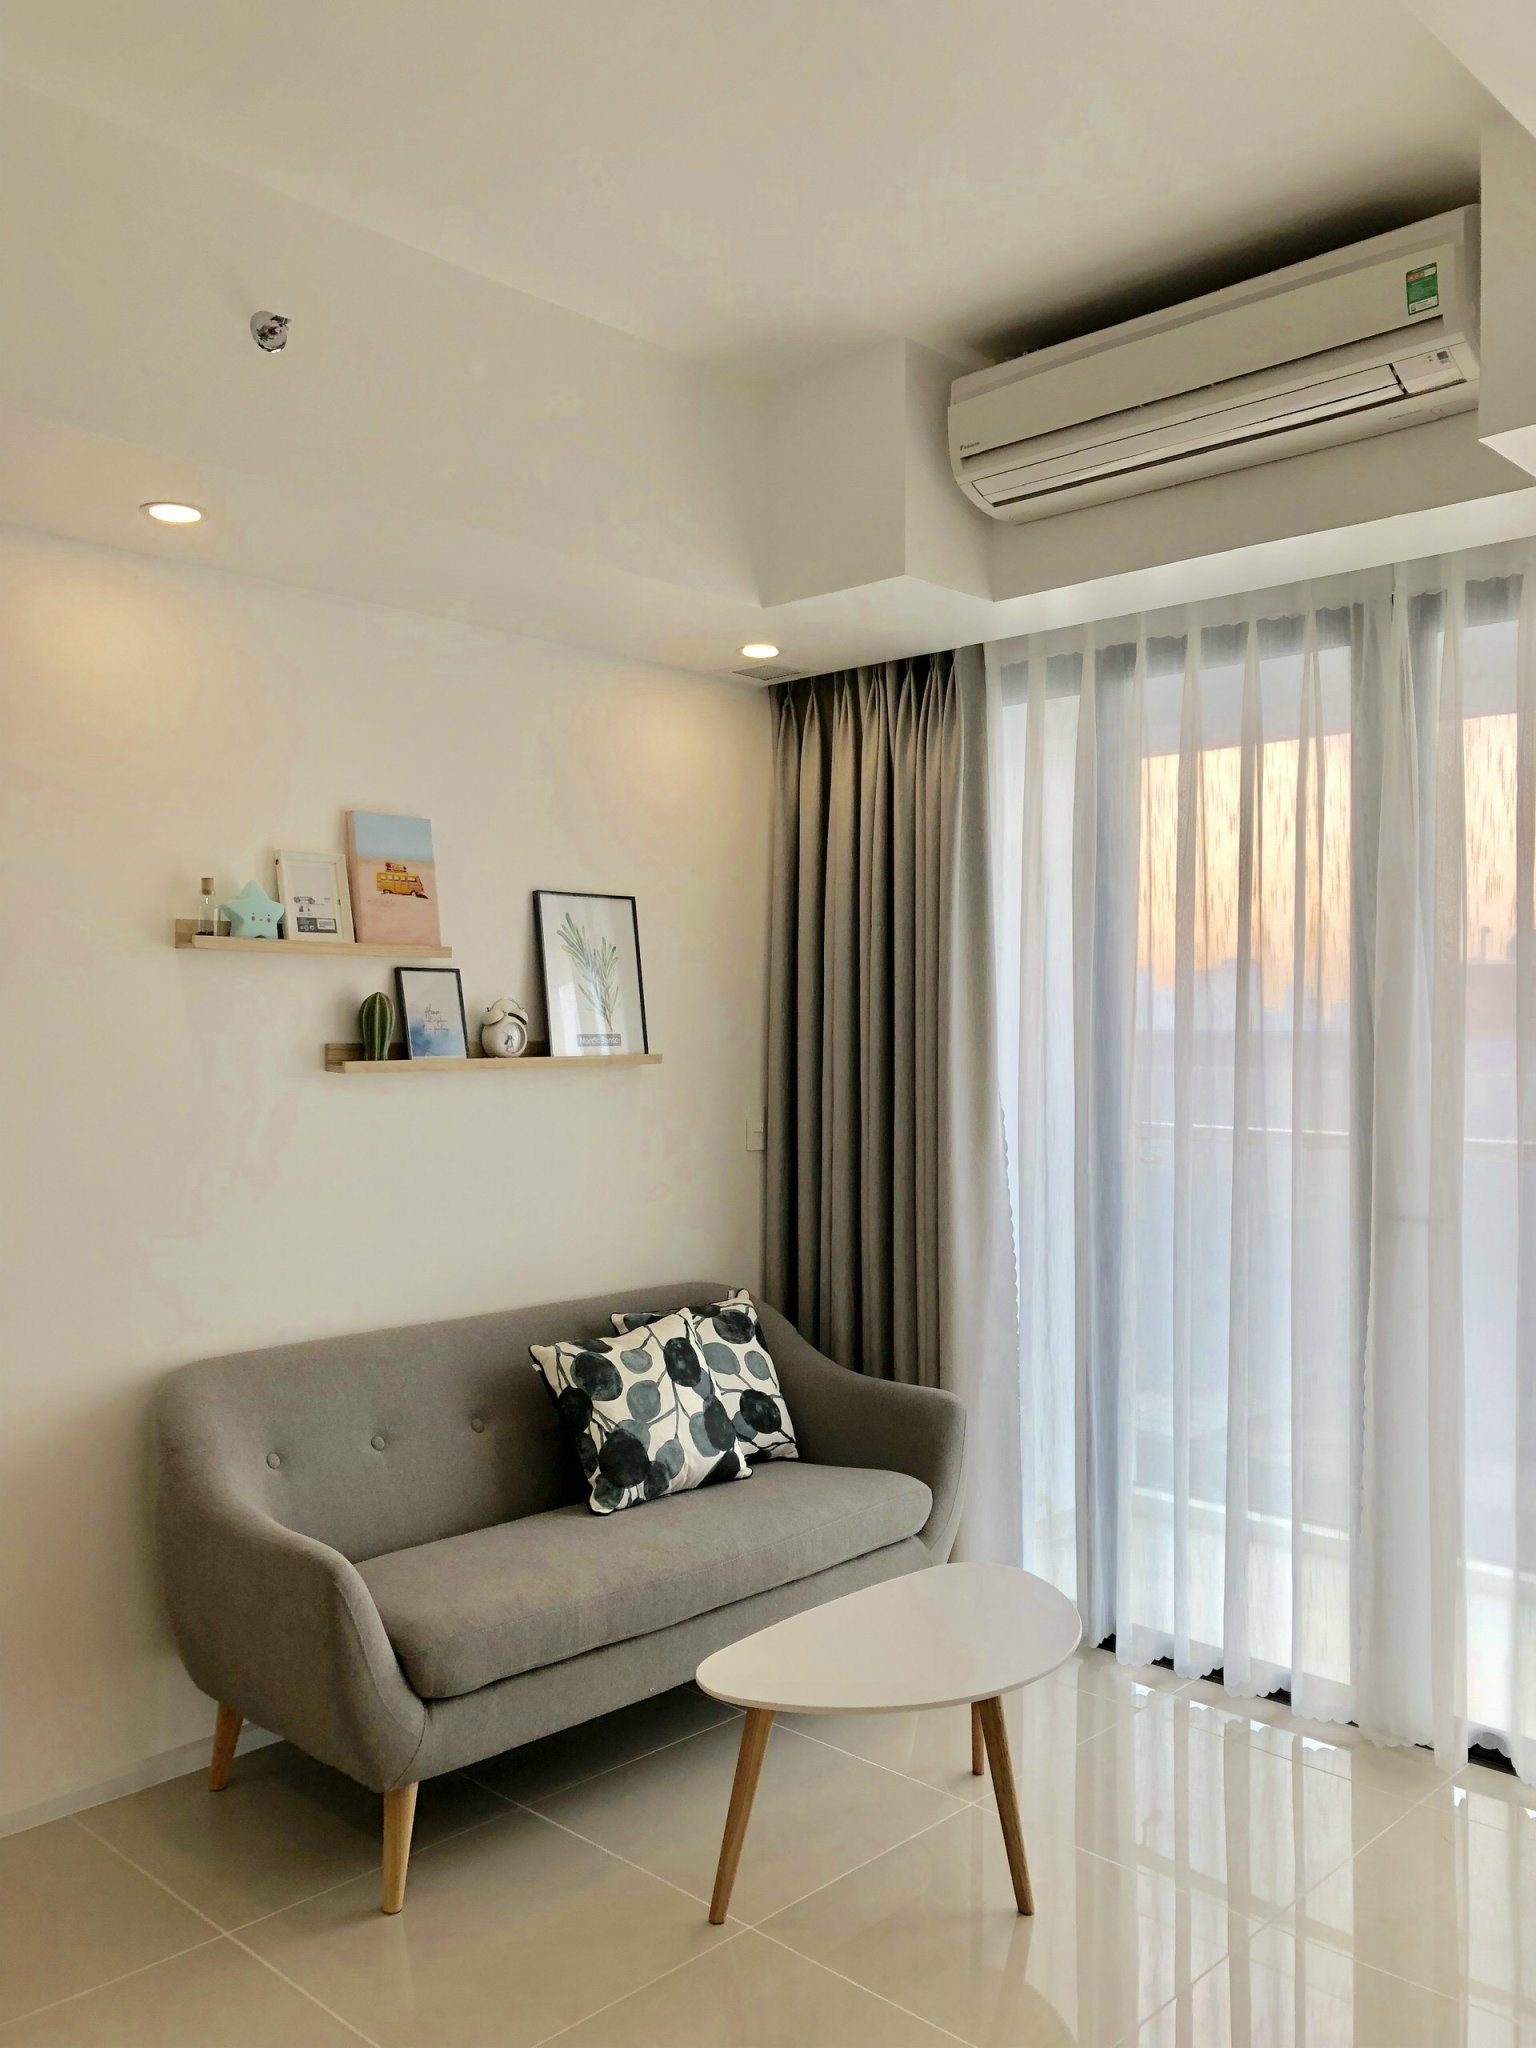 Giá sốc cho căn hộ đầy đủ tiện nghi tại Đà nẵng